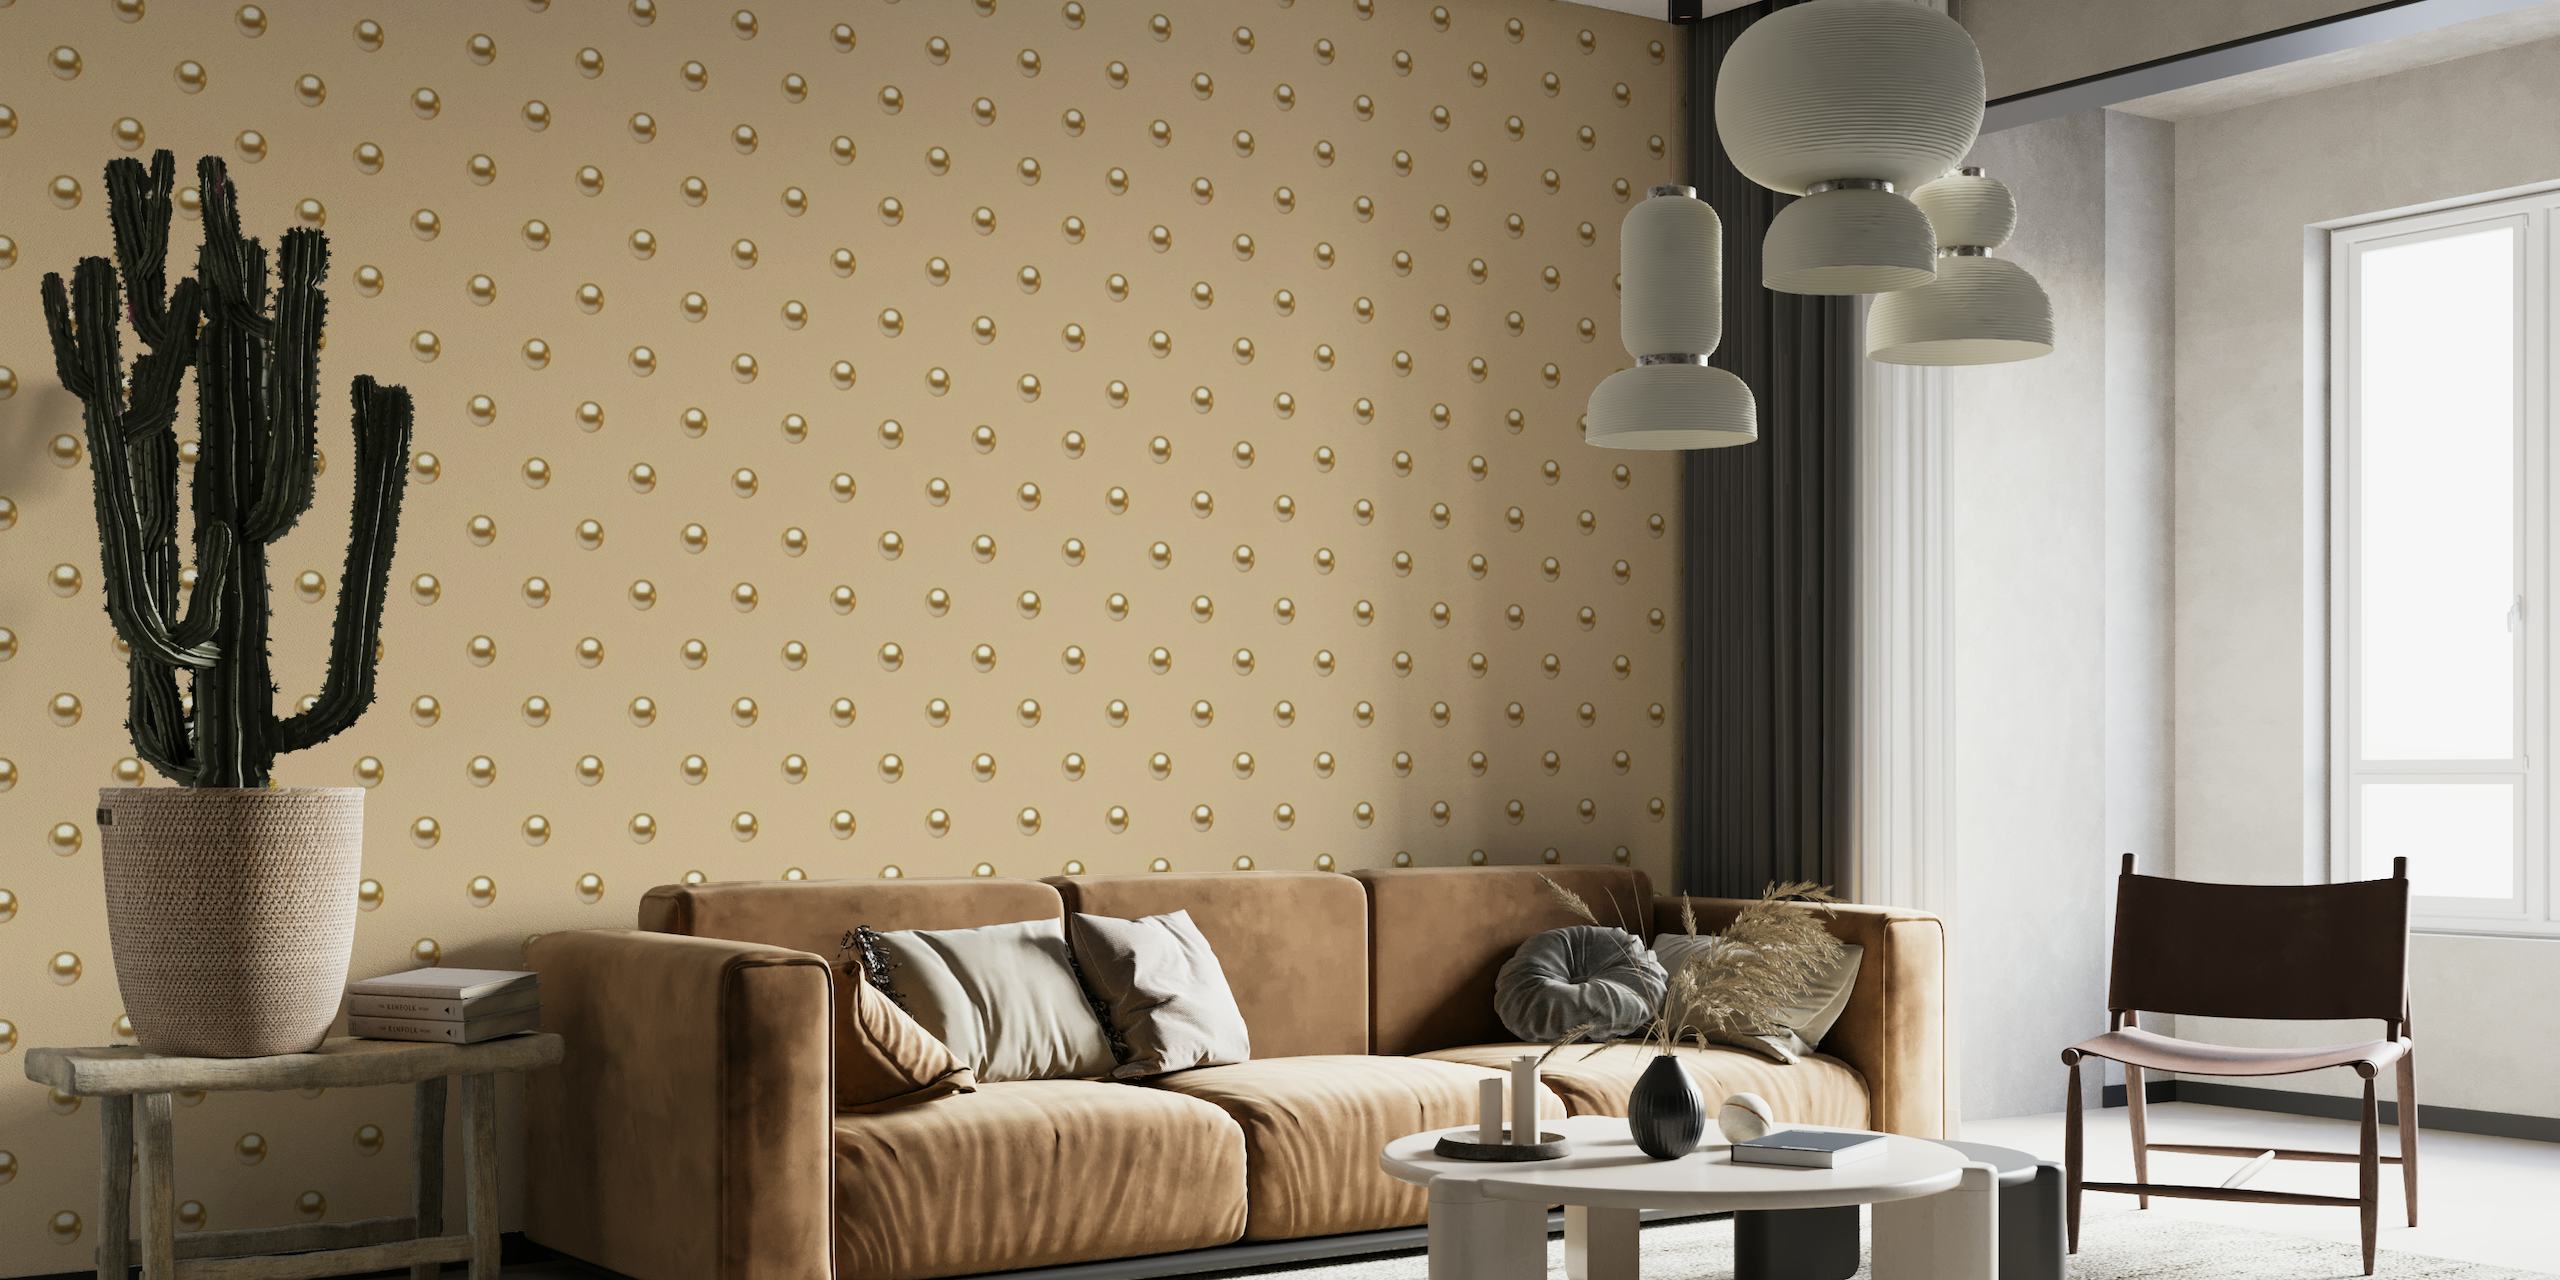 Fotomural Pearl Polka Dots 4 con puntos brillantes sobre un fondo neutro adecuado para una decoración elegante del hogar